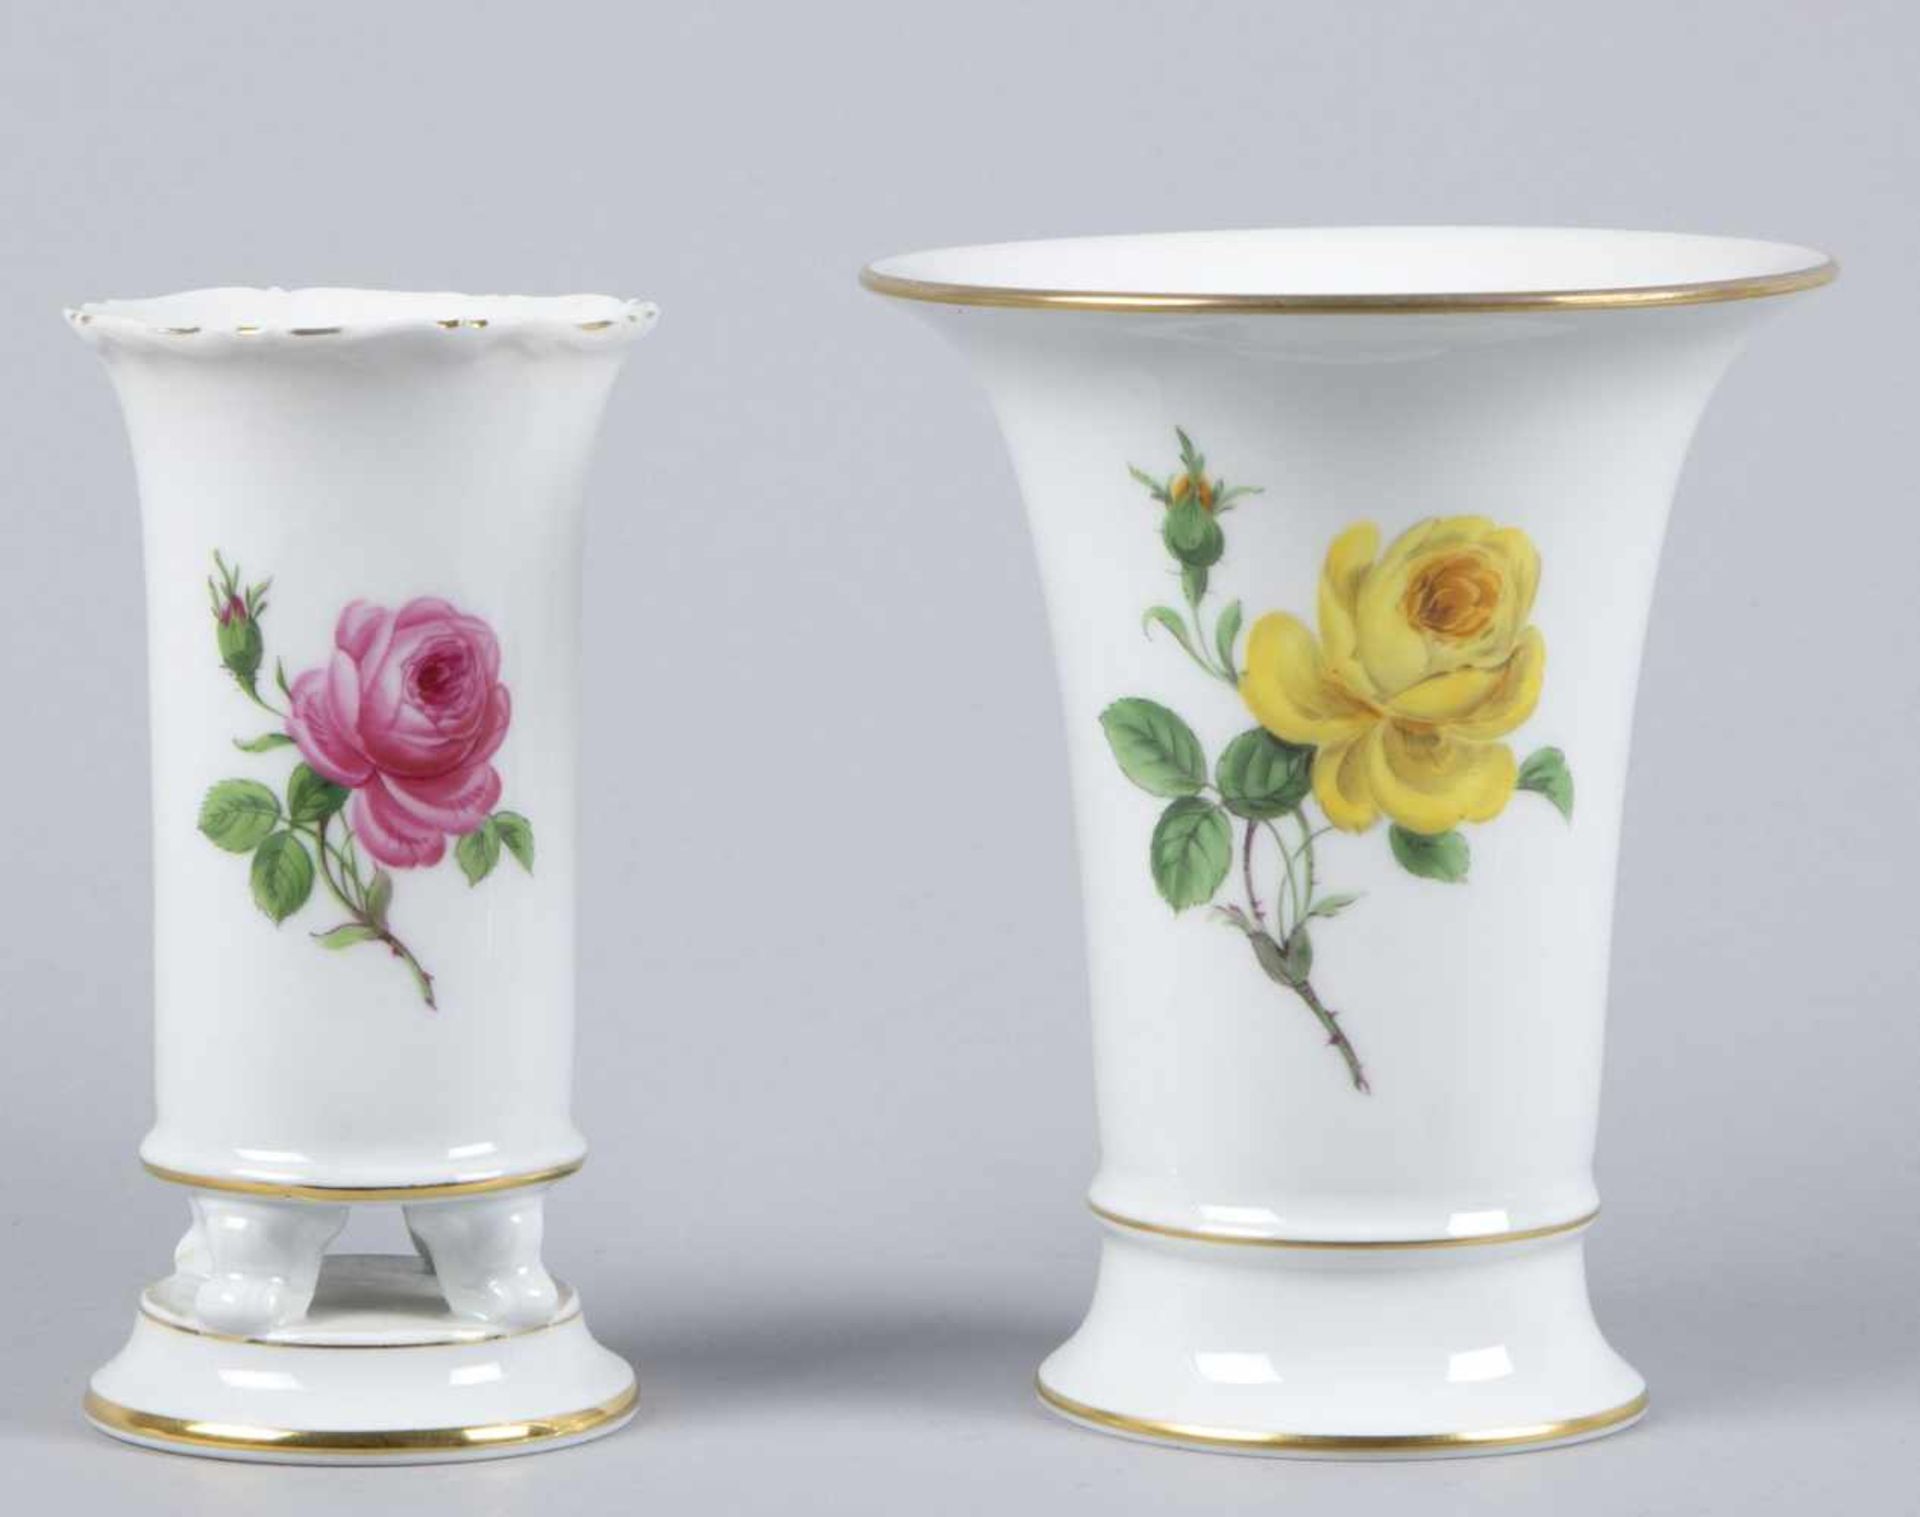 Zwei kleine VasenPolychrome florale Bemalung. Goldrand. Marke: Meissen. H. bis 14 cm. 2. Wahl.- - -